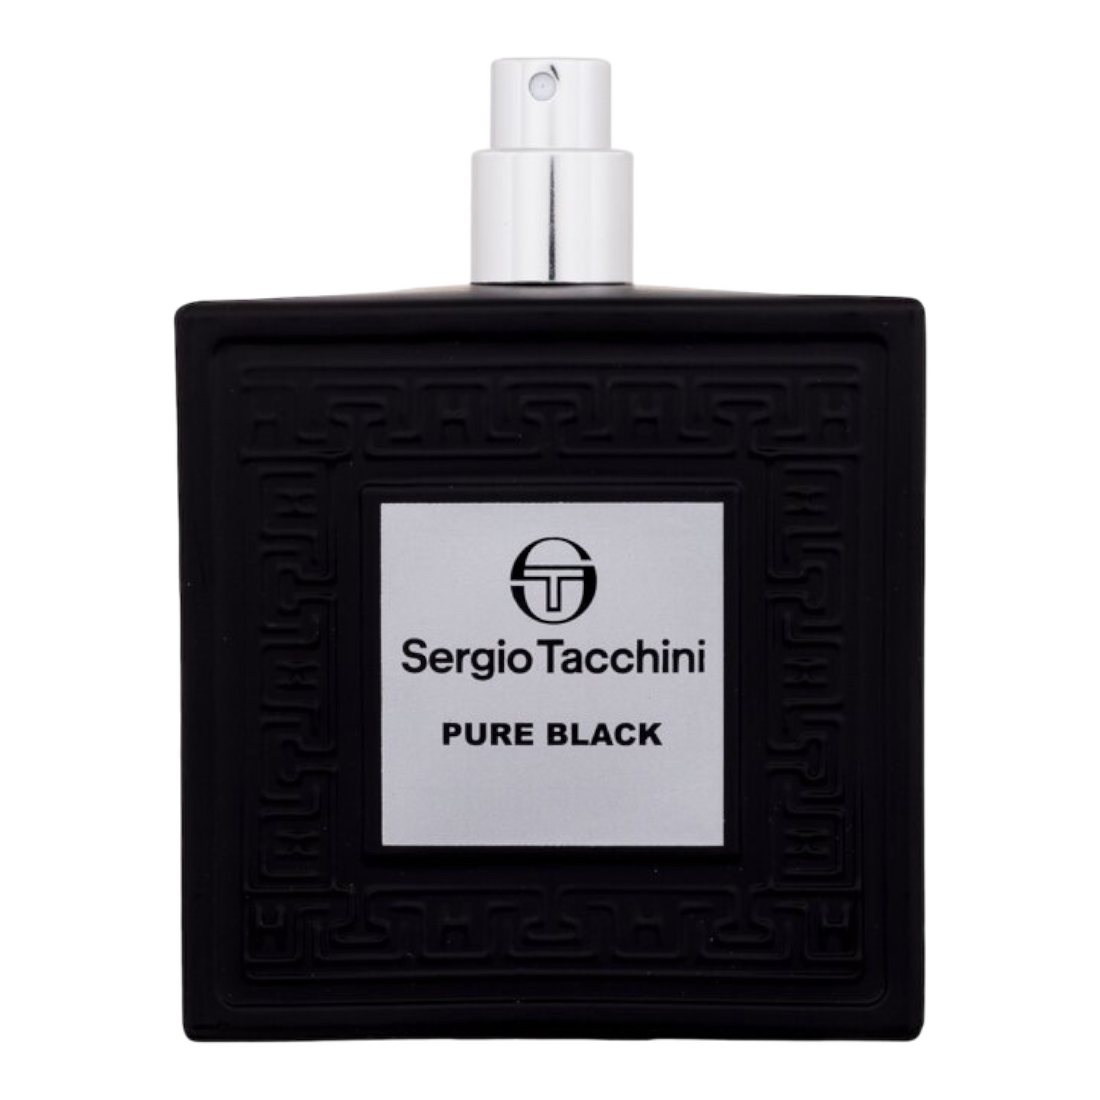 SERGIO TACCHINI UOMO PURE BLACK EDT 100ML SPRAY TS